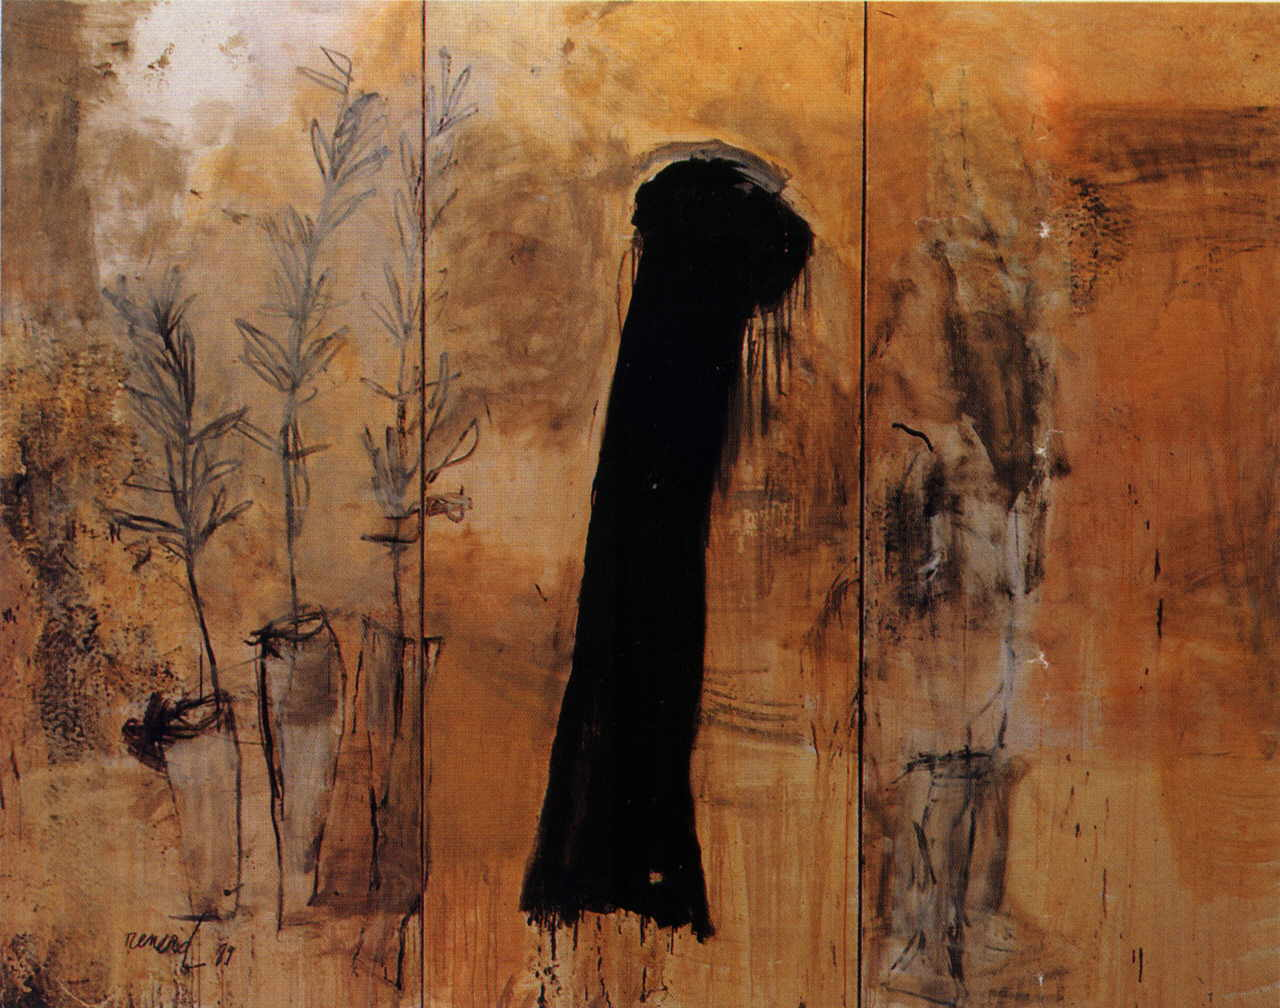 Renard Emmanuelle 
"Tryptichon", 1989
técnica mixta / tela
250 x 330 cm